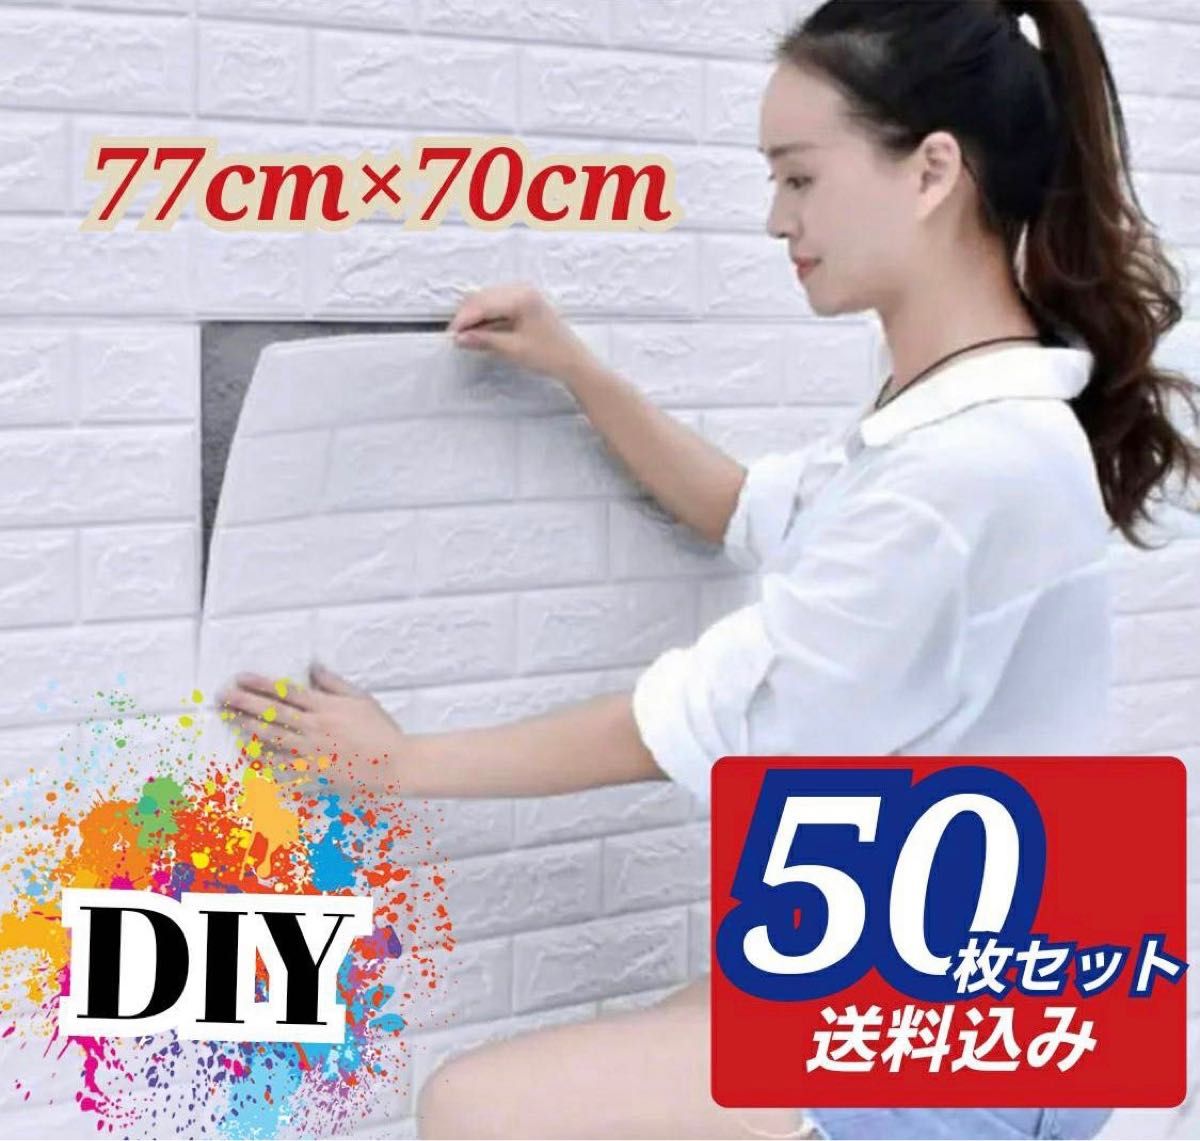 50枚 3D壁紙 DIYレンガ調壁紙シール ホワイト レンガ調壁紙 5 70㎝×77